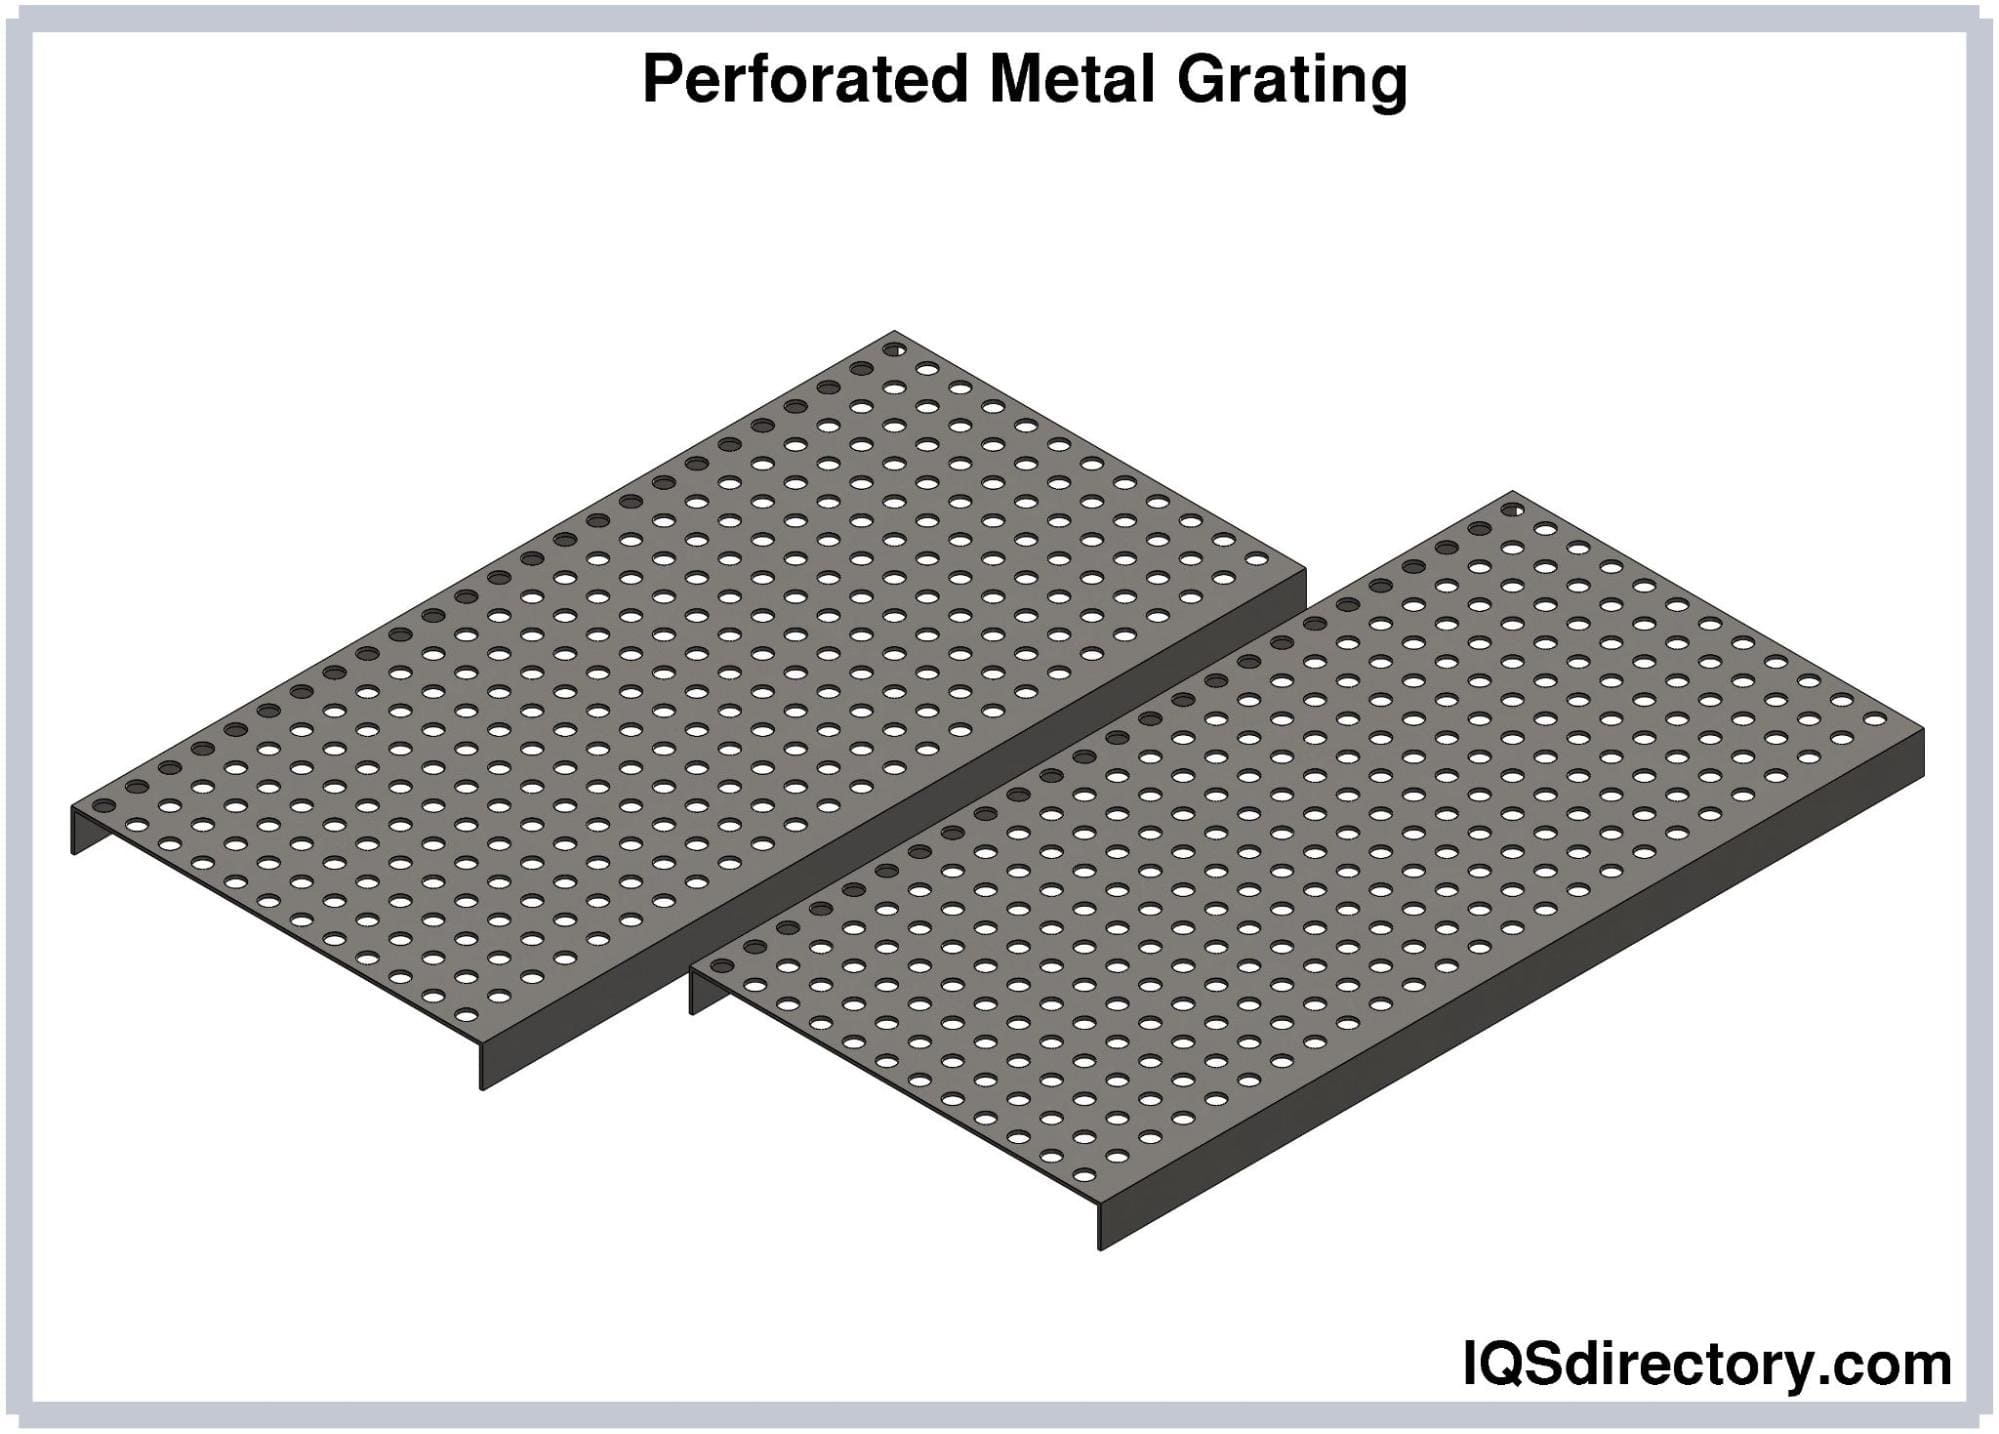 Perforated Metal Grating